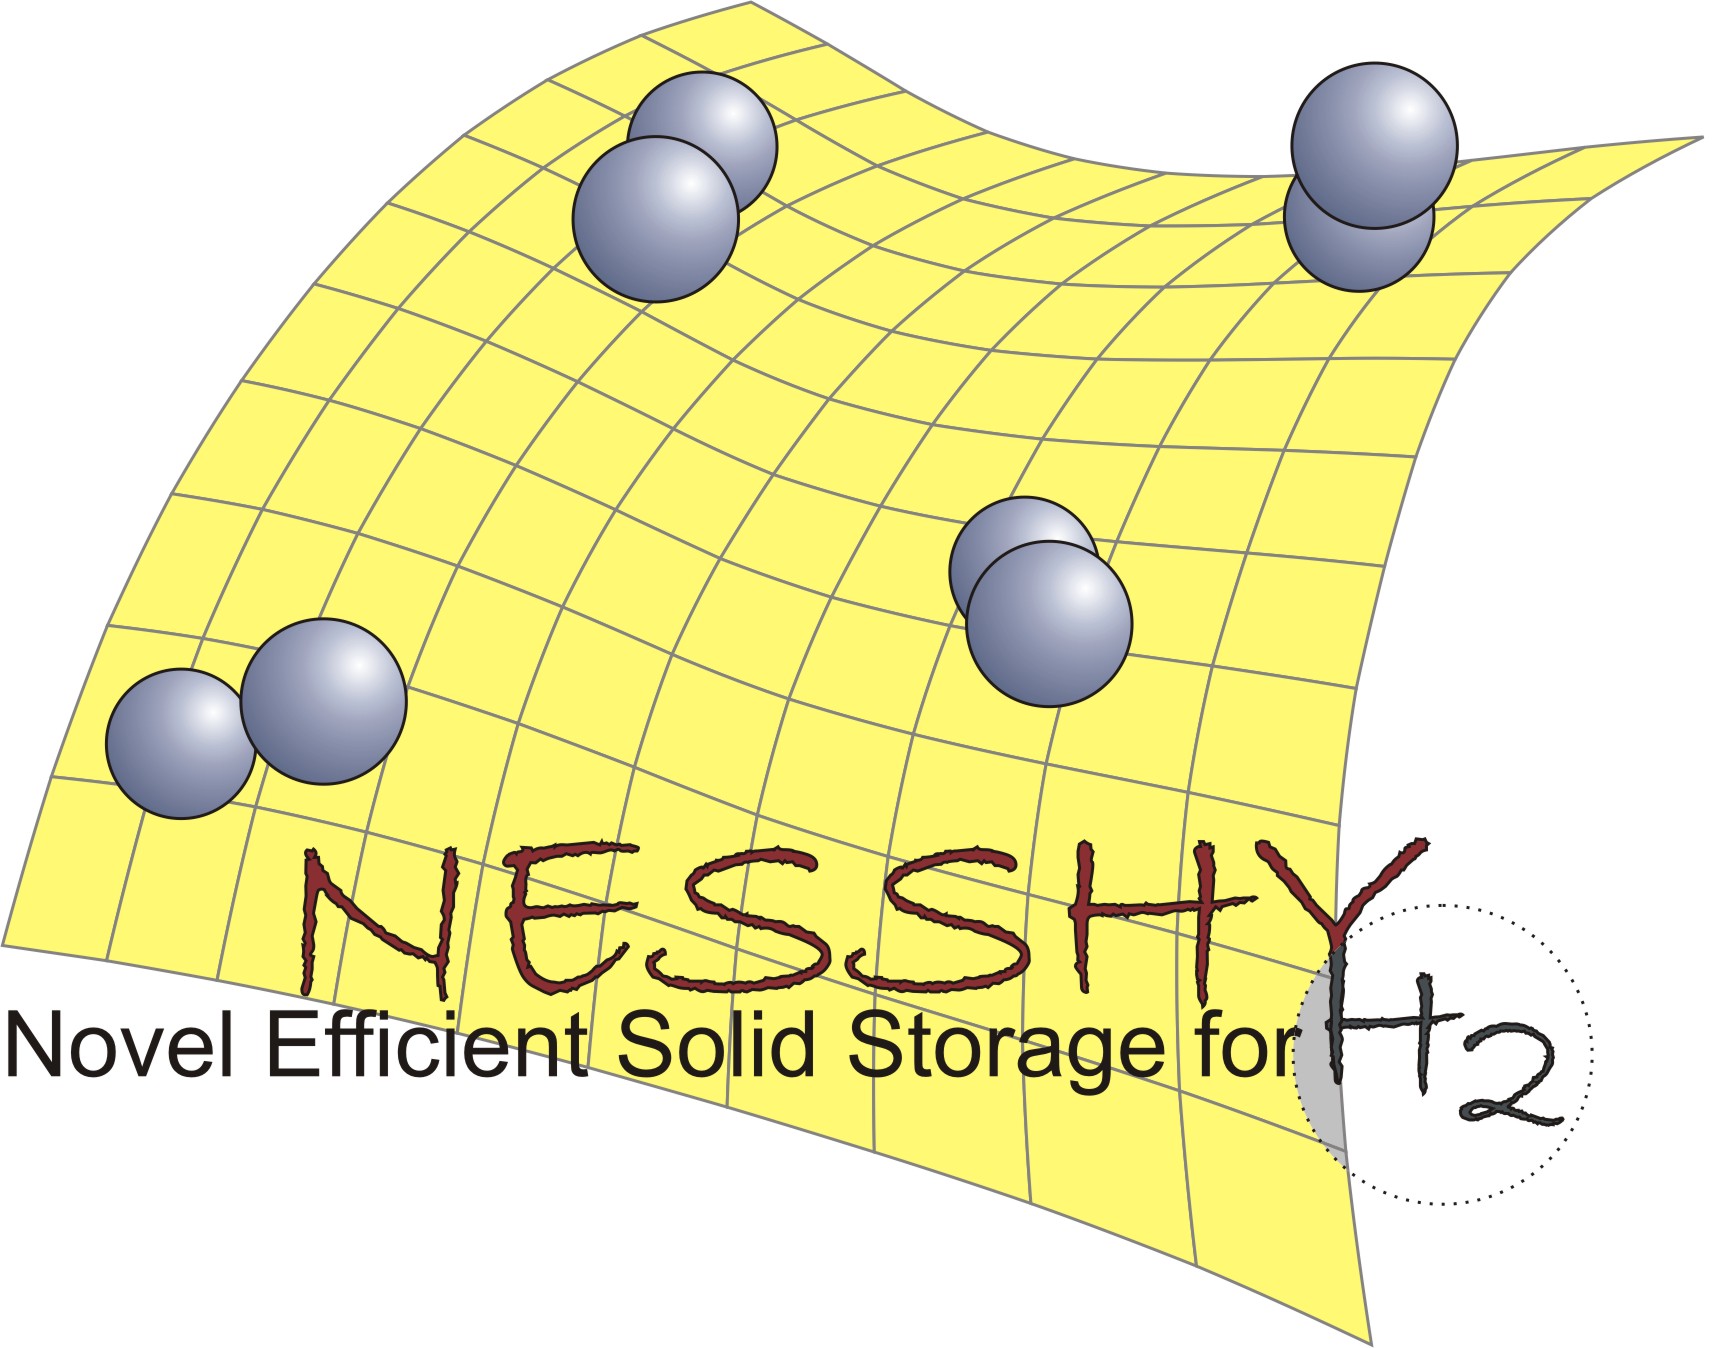 Novel efficient solid storage for hydrogen logo